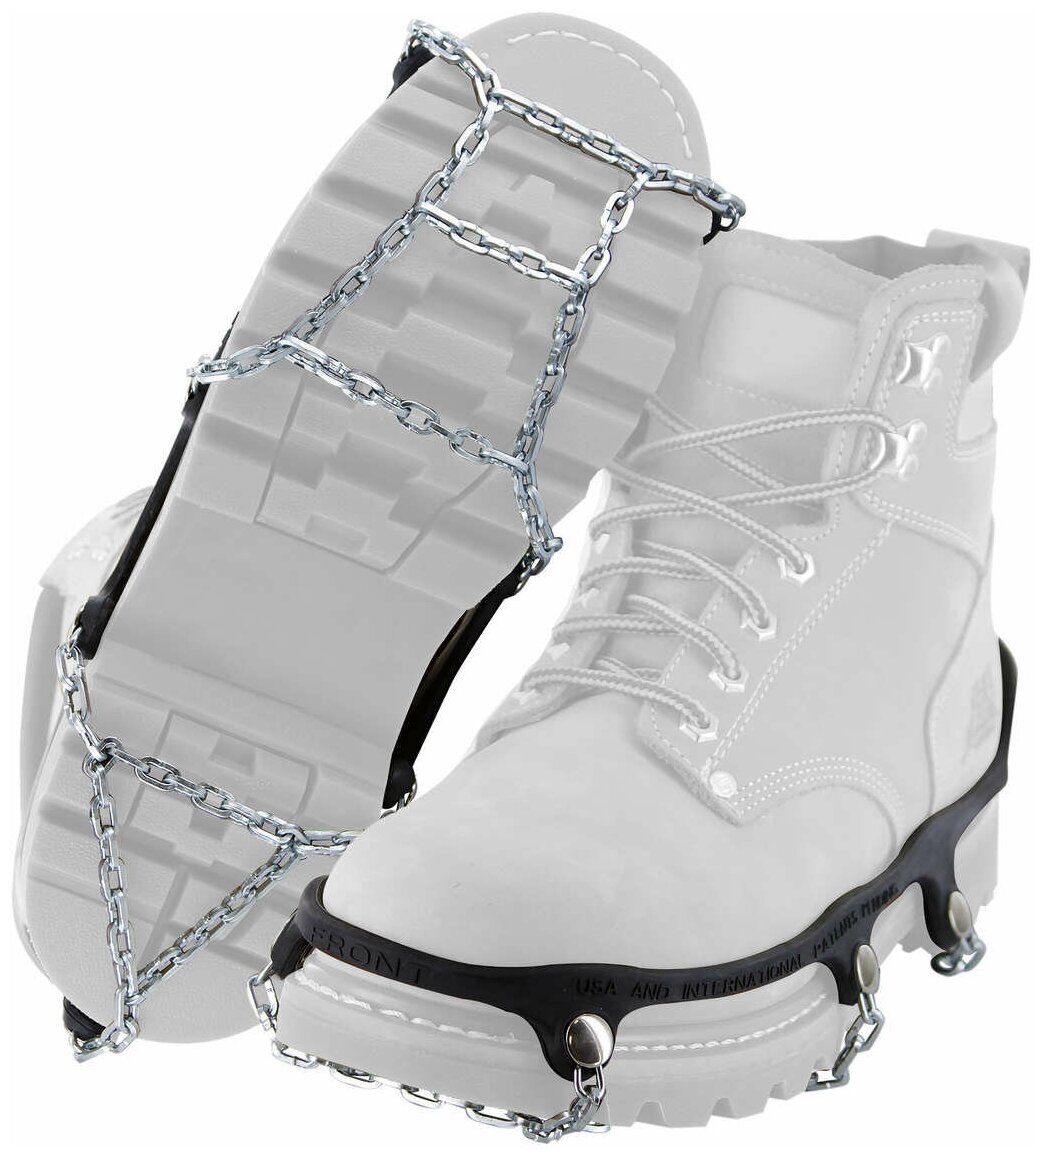 Цепи для обуви Yaktrax Chains, размер 38-40